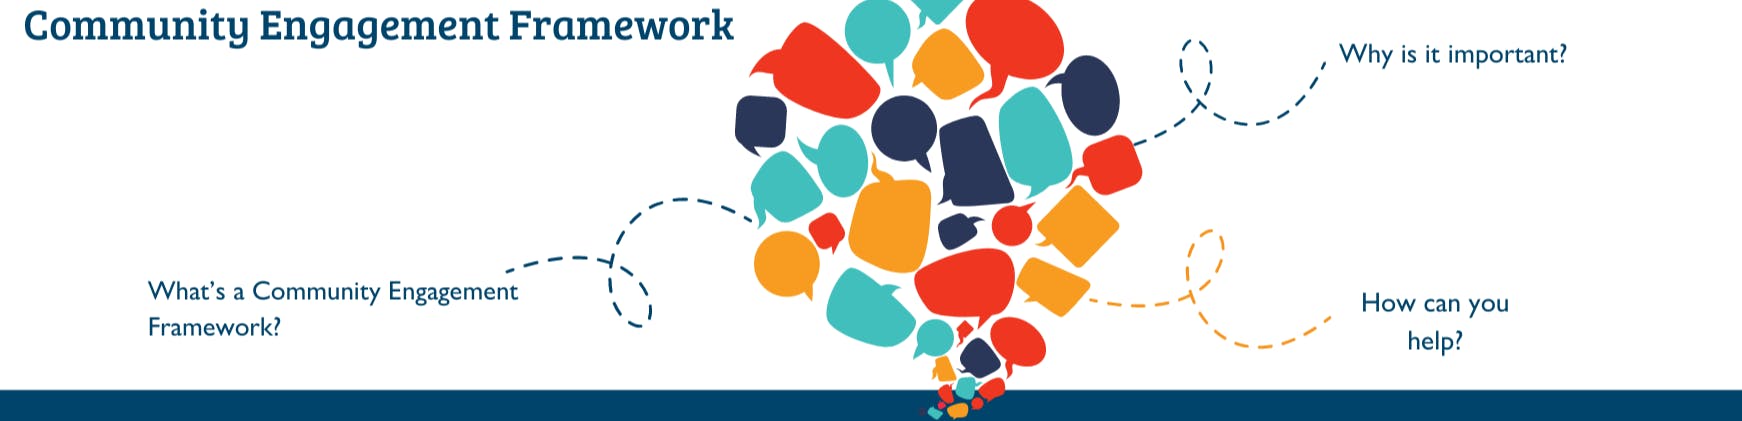 Image: Community Engagement Framework